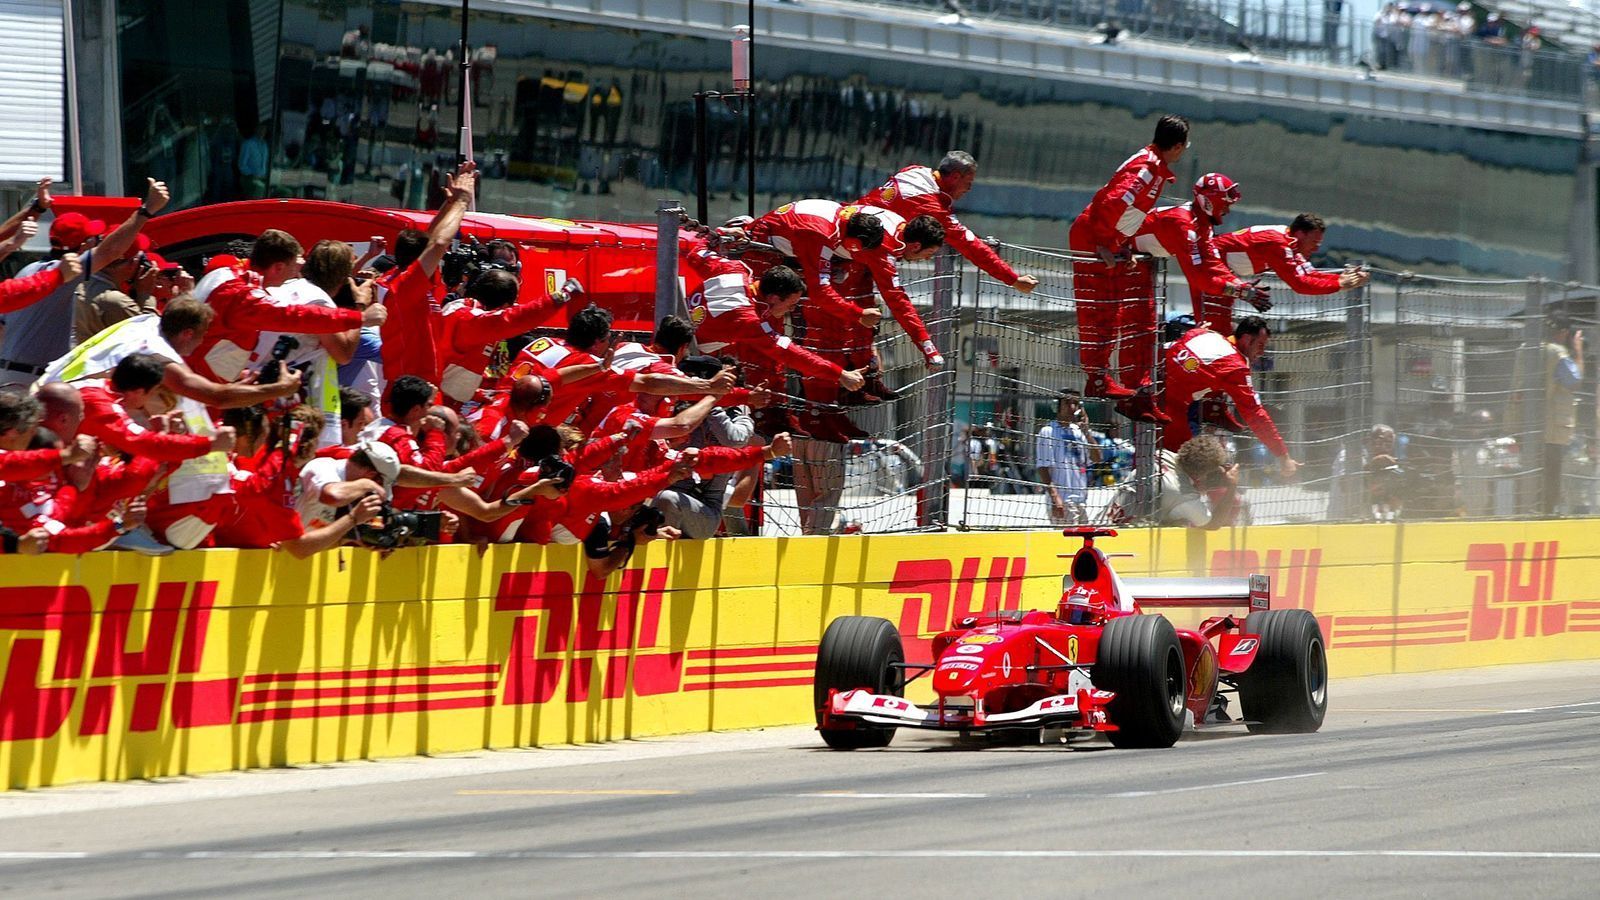 
                <strong>Meiste Grand-Prix-Siege in einer Saison</strong><br>
                Michael Schumacher: 13 (Platz 1; 2004) - Lewis Hamilton: 11 (geteilter Platz 3; 2014, 2018, 2019)
              